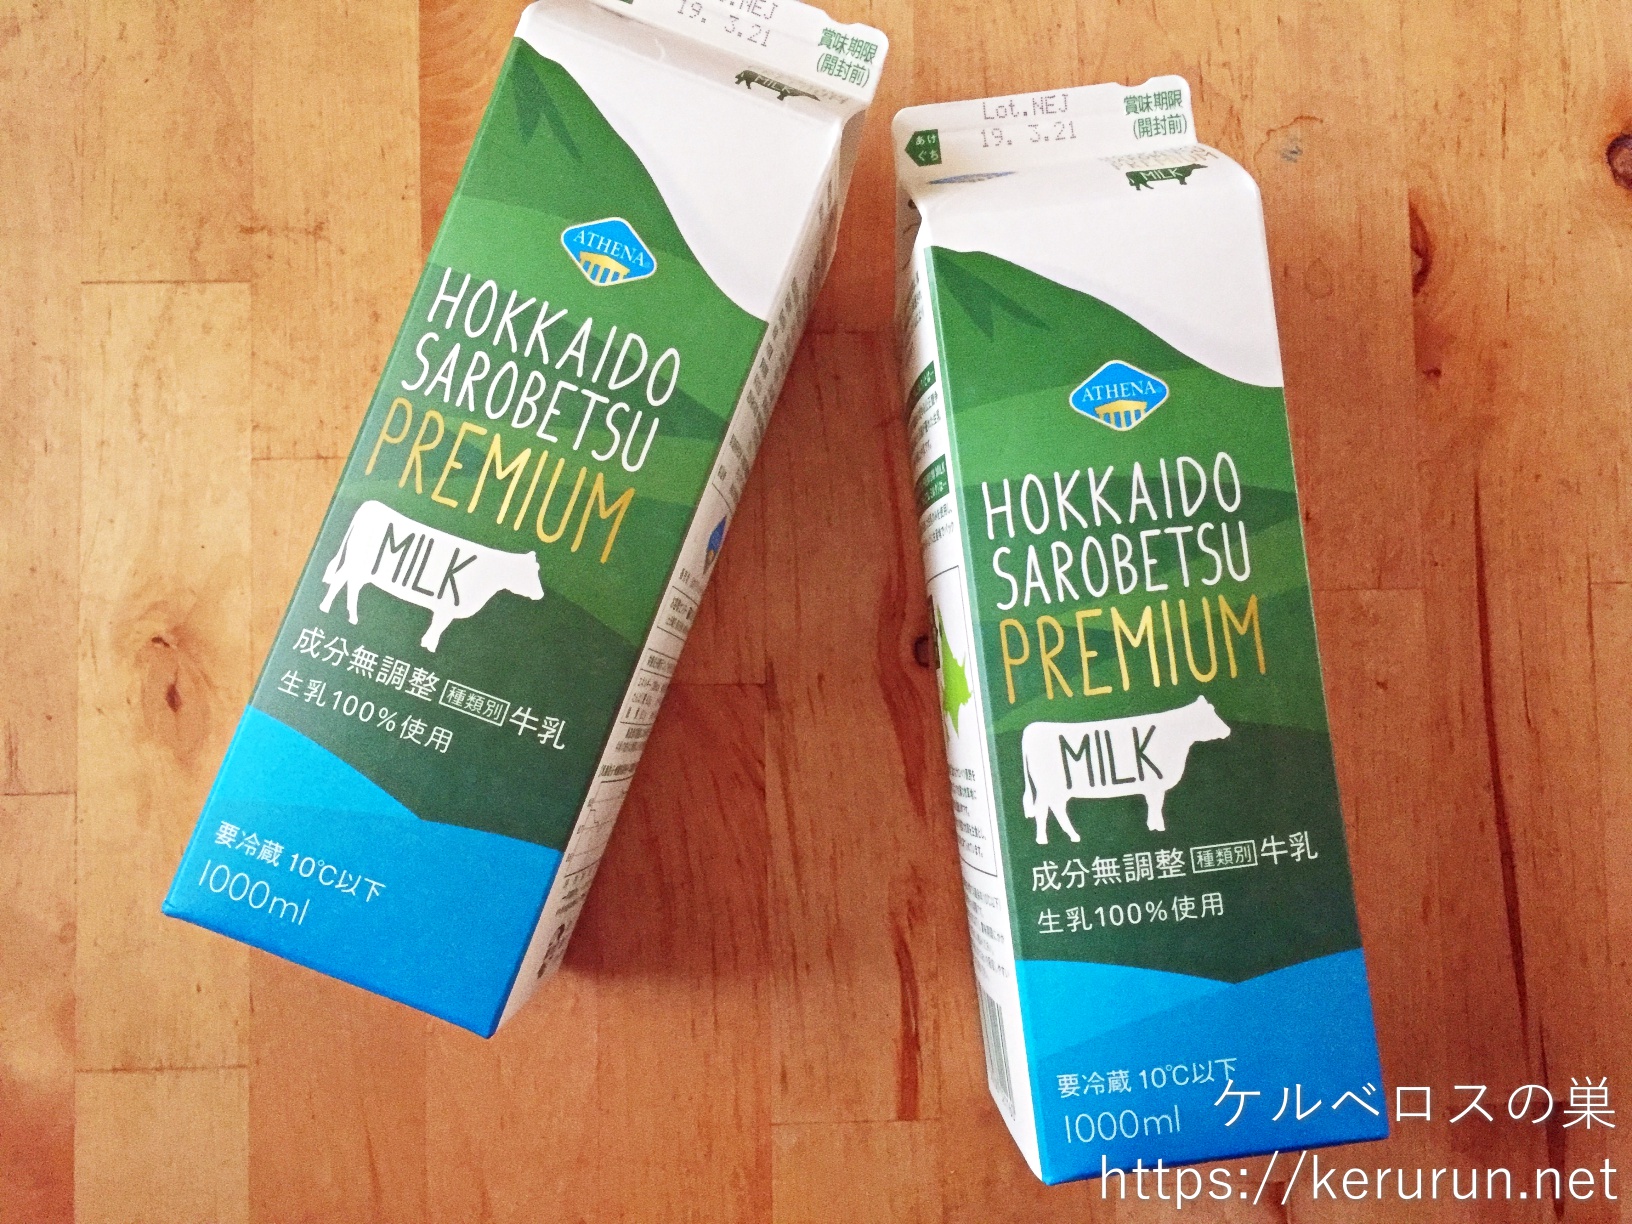 【コストコ】ATHENA 北海道サロベツプレミアムミルク（牛乳）